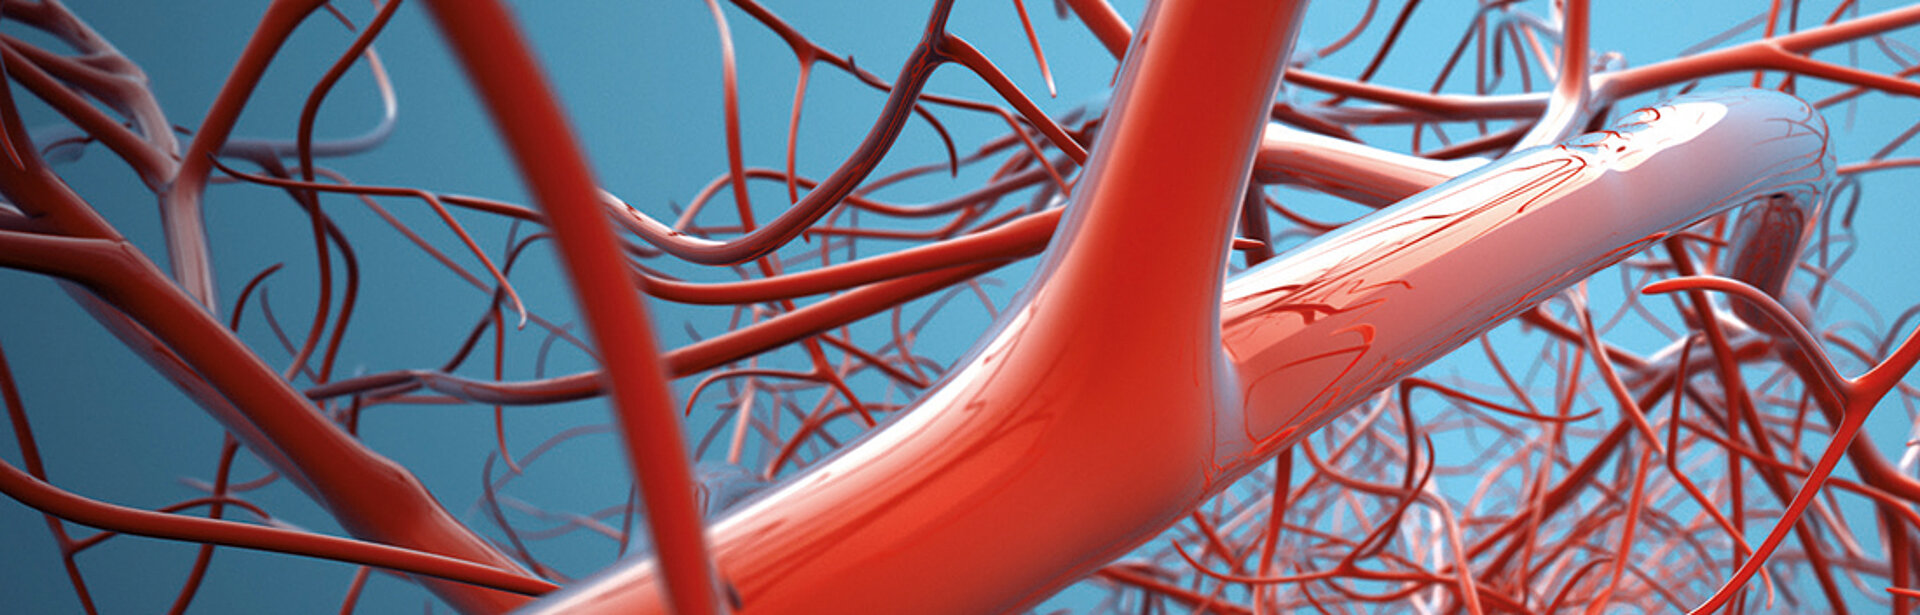 Symbolbild von Arterien. 